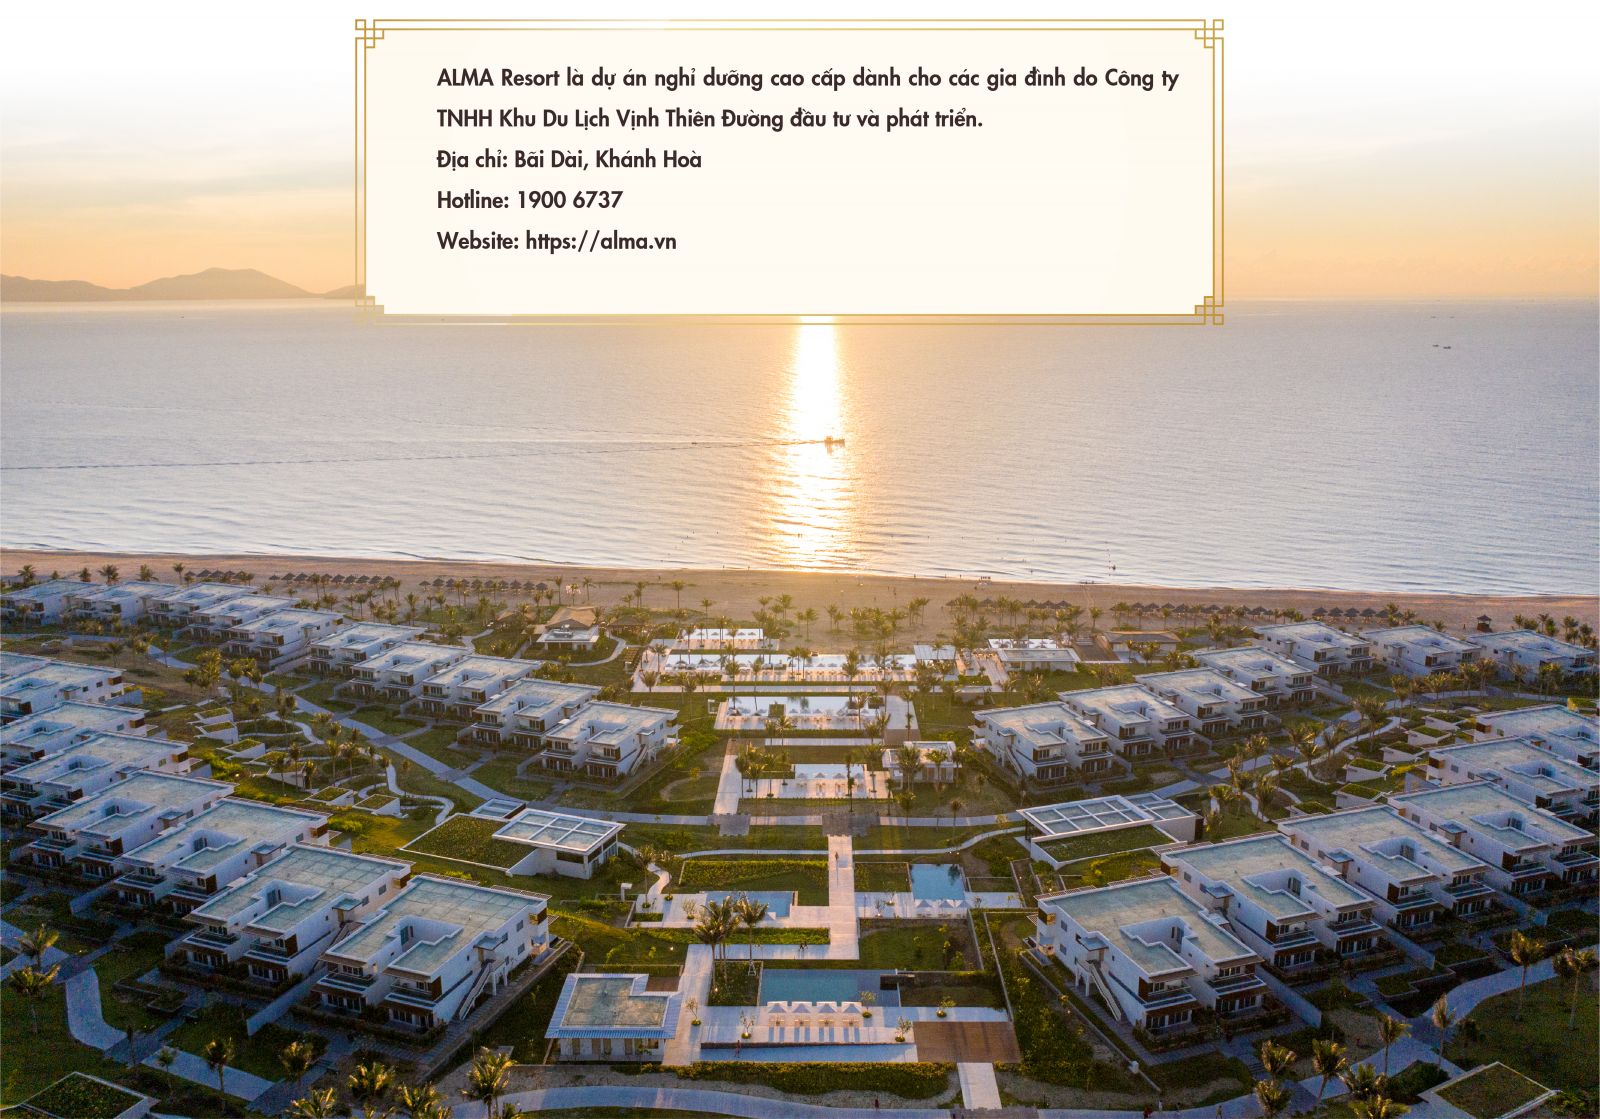 Alma Resort.